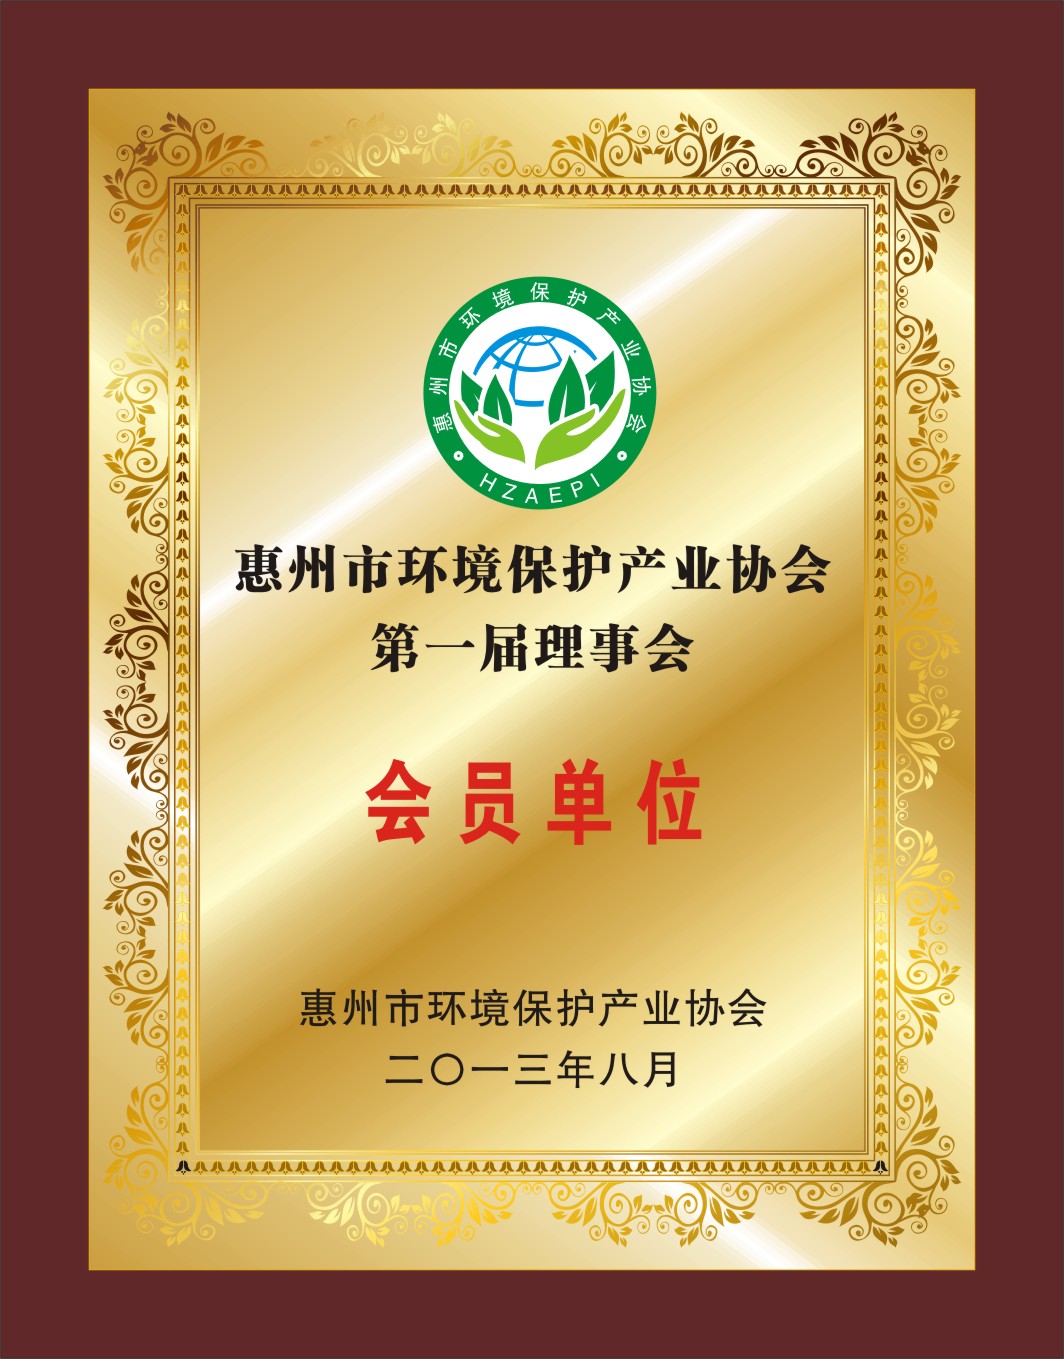 惠州市环境保护产业协会成员